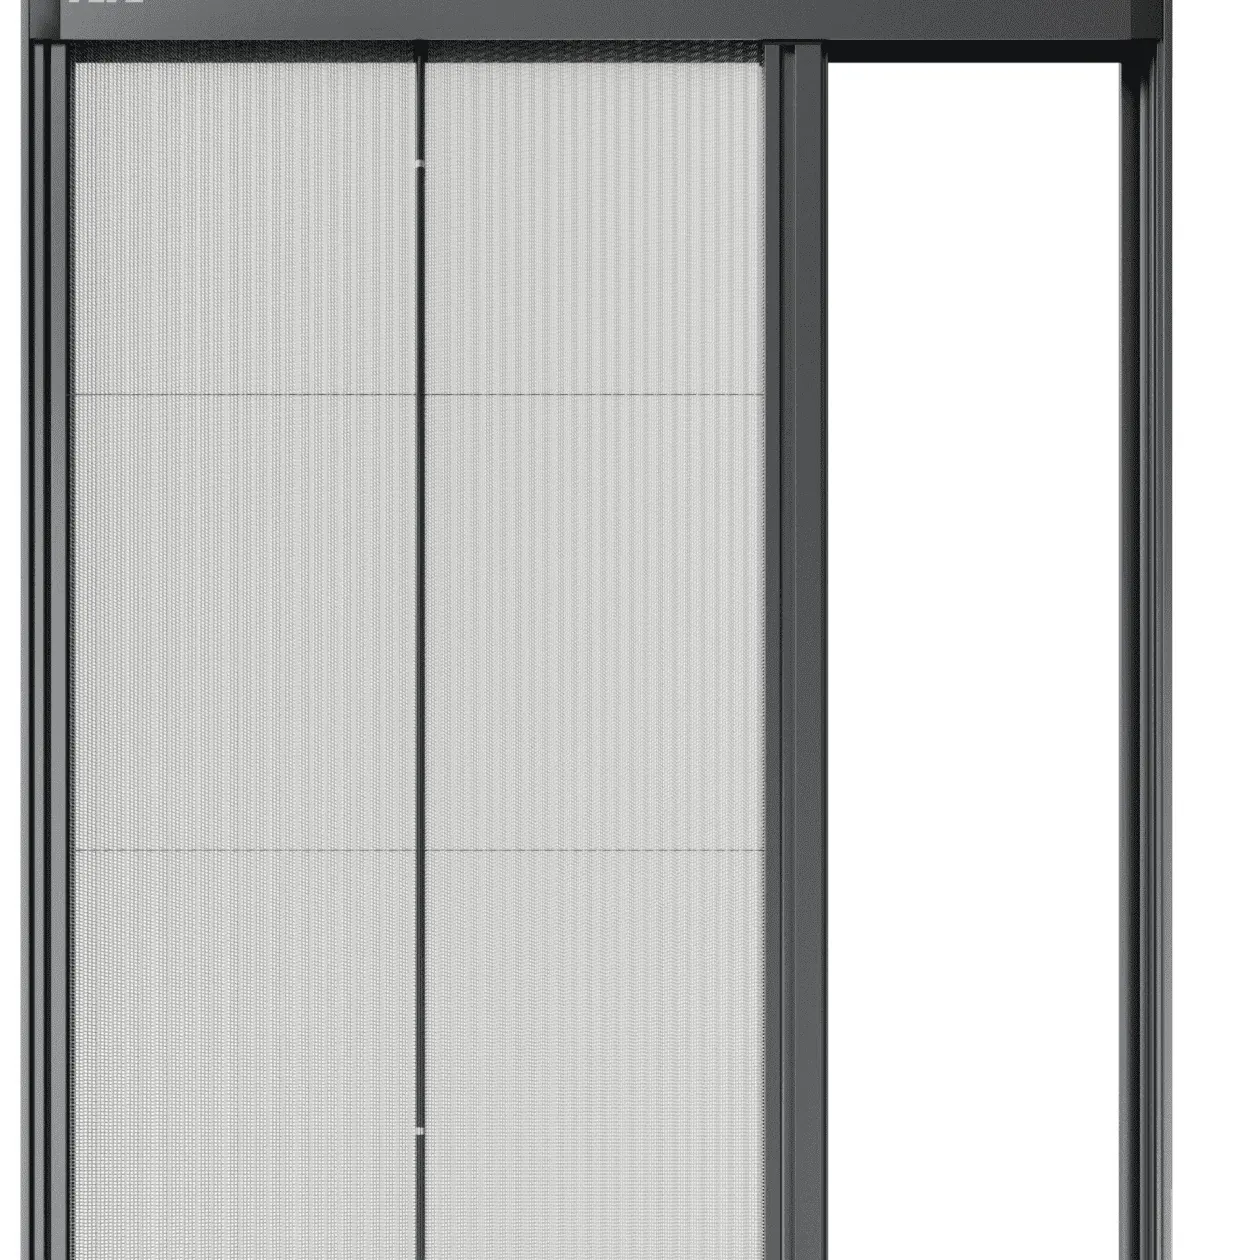 Pantallas de ventanas con marco de aluminio para garaje mosquitera retráctil plisada para puertas correderas